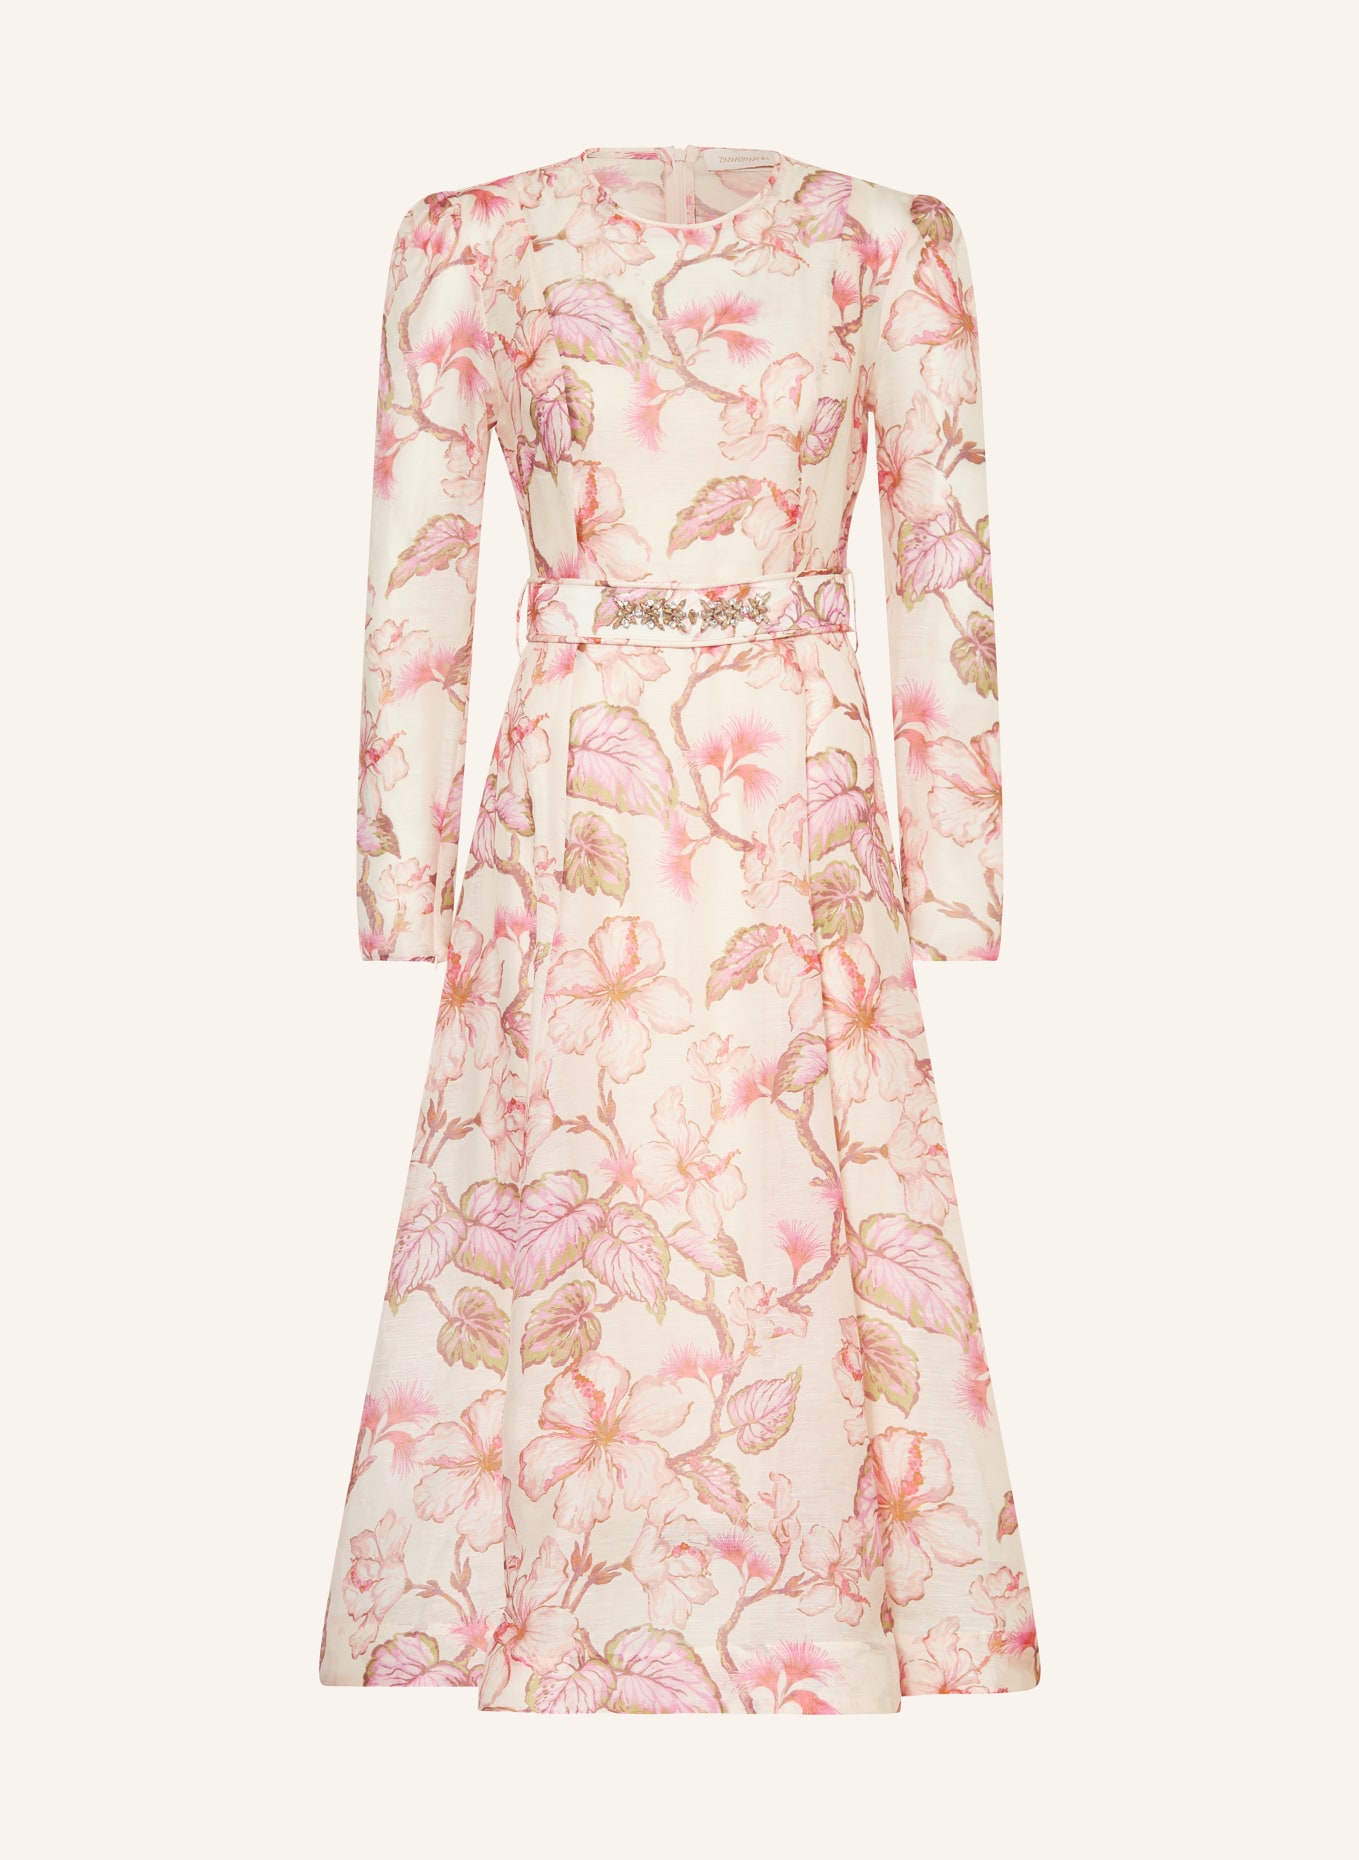 ZIMMERMANN Kleid MATCHMAKER mit Leinen und Seide, Farbe: ROSÉ/ ROSA/ PINK (Bild 1)